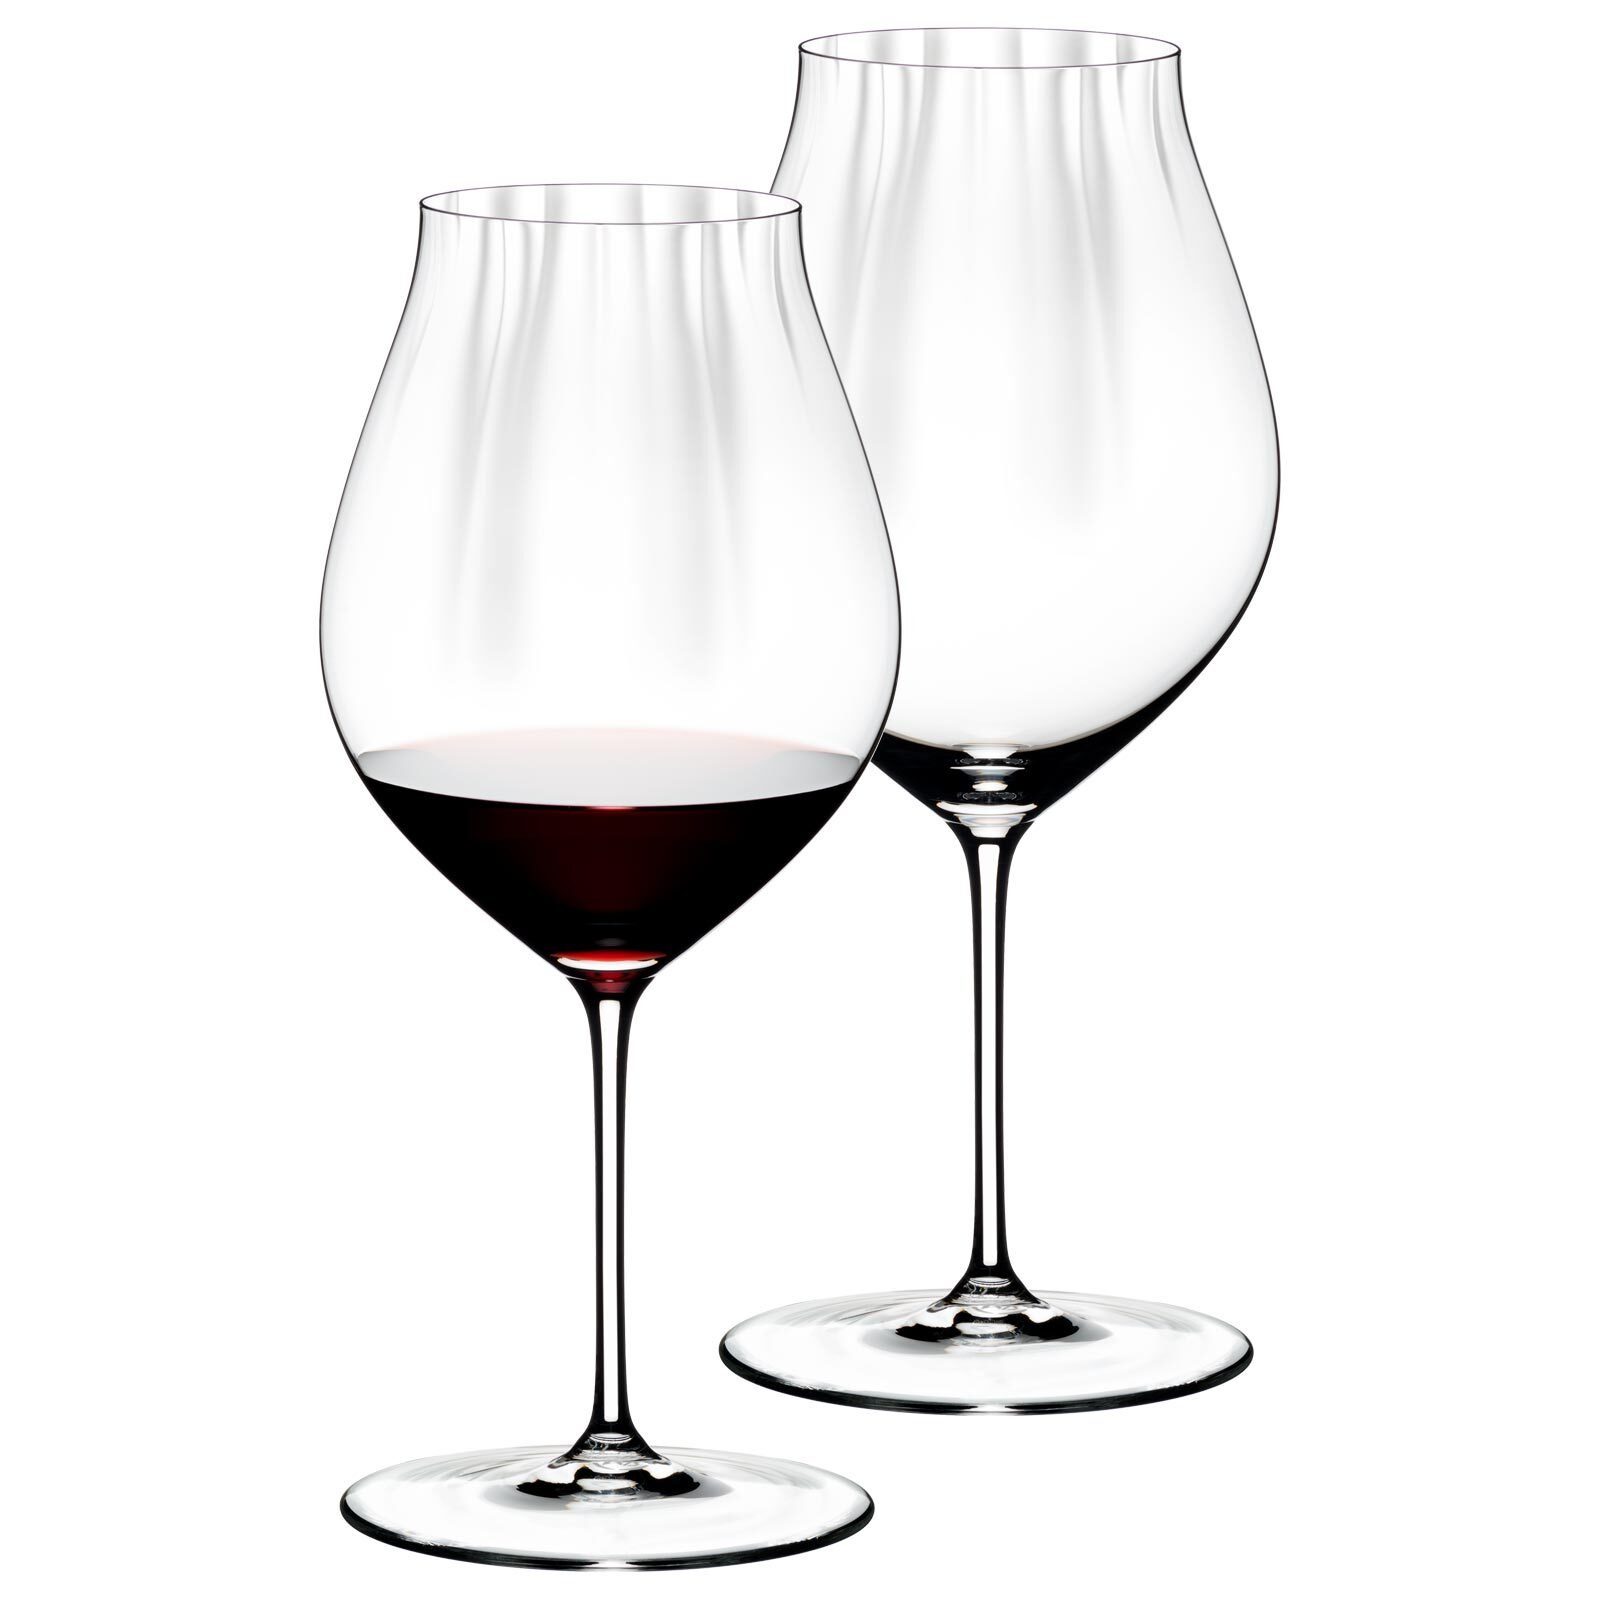 SPIEGELAU RIEDEL Glas Rotweinglas Performance Pinot Noir Gläser 830 ml 2er Set, Glas